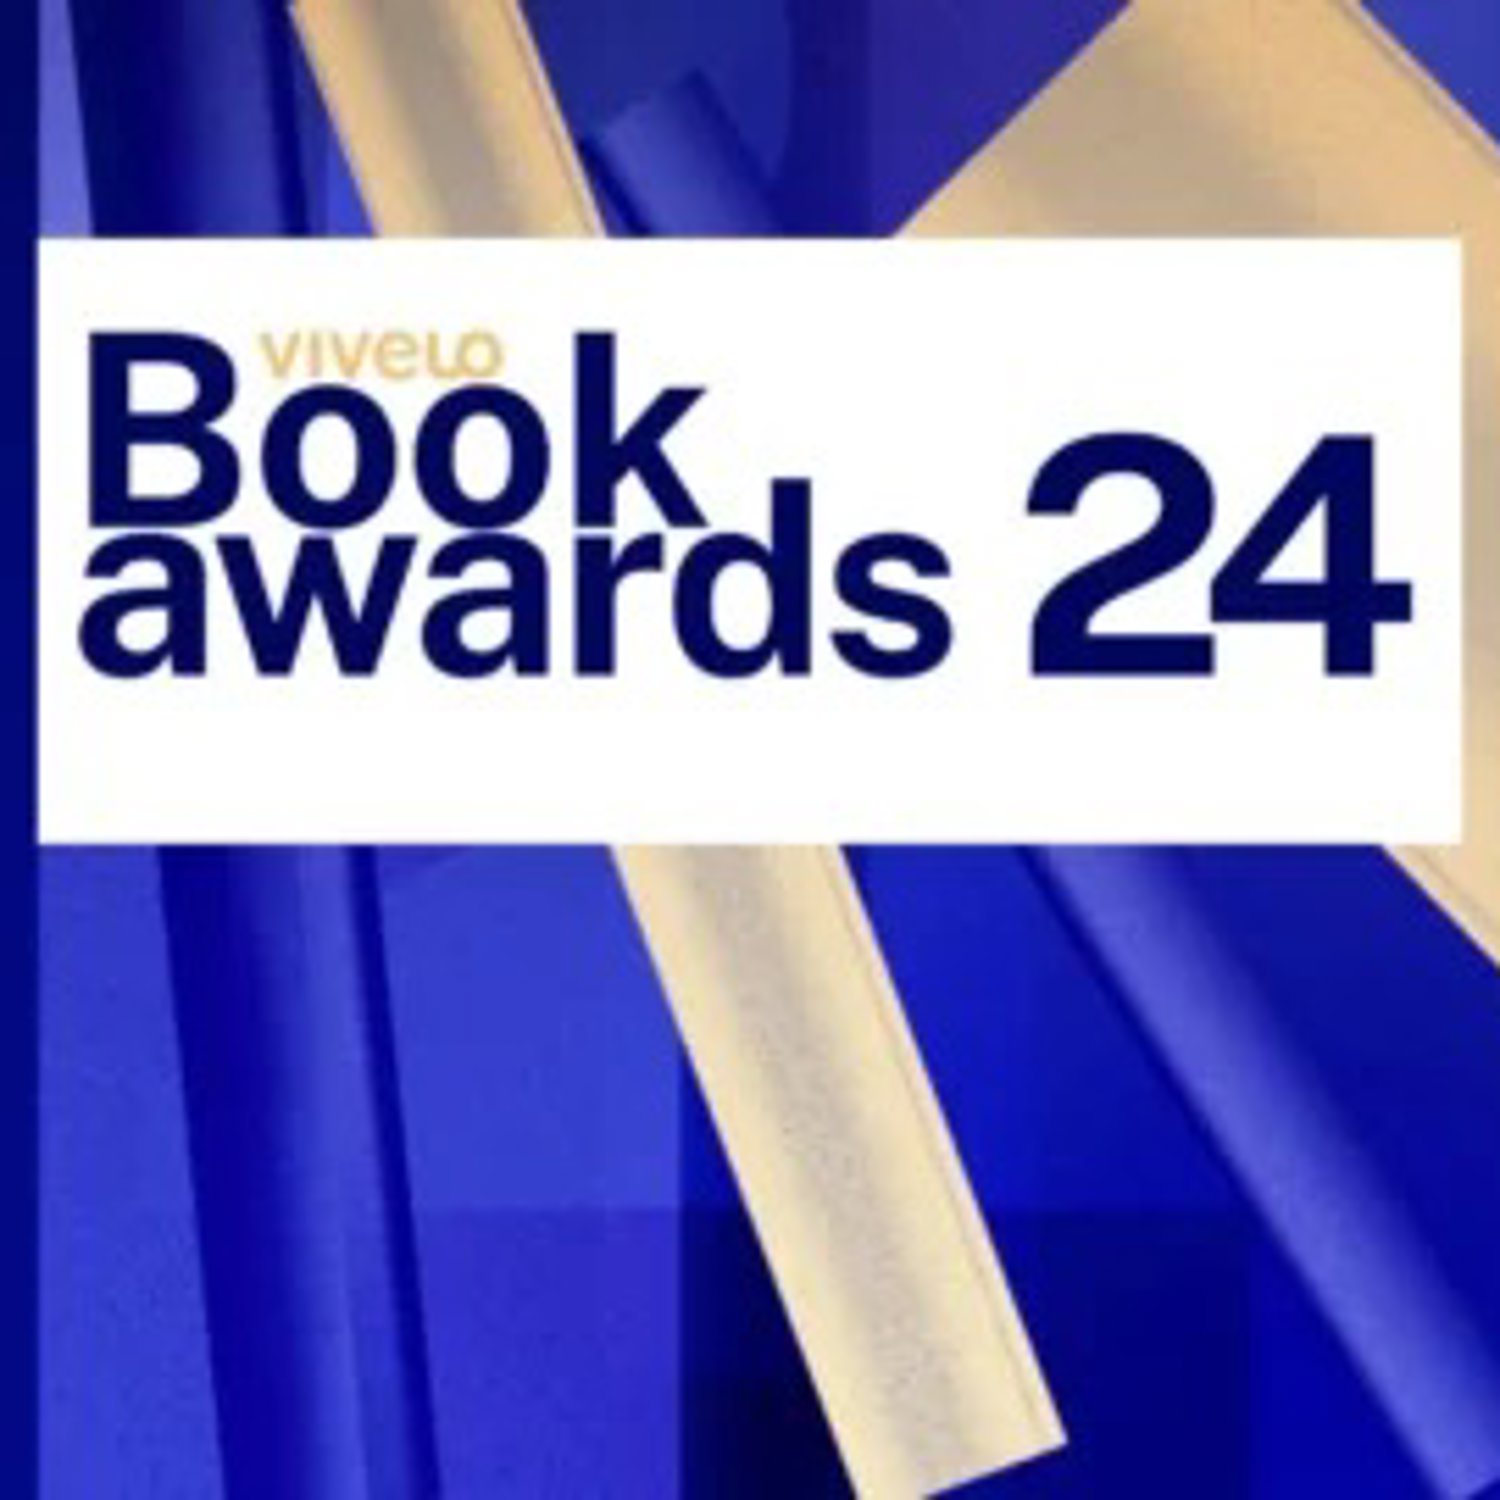 Nominacje do Vivelo Book Awards 2024